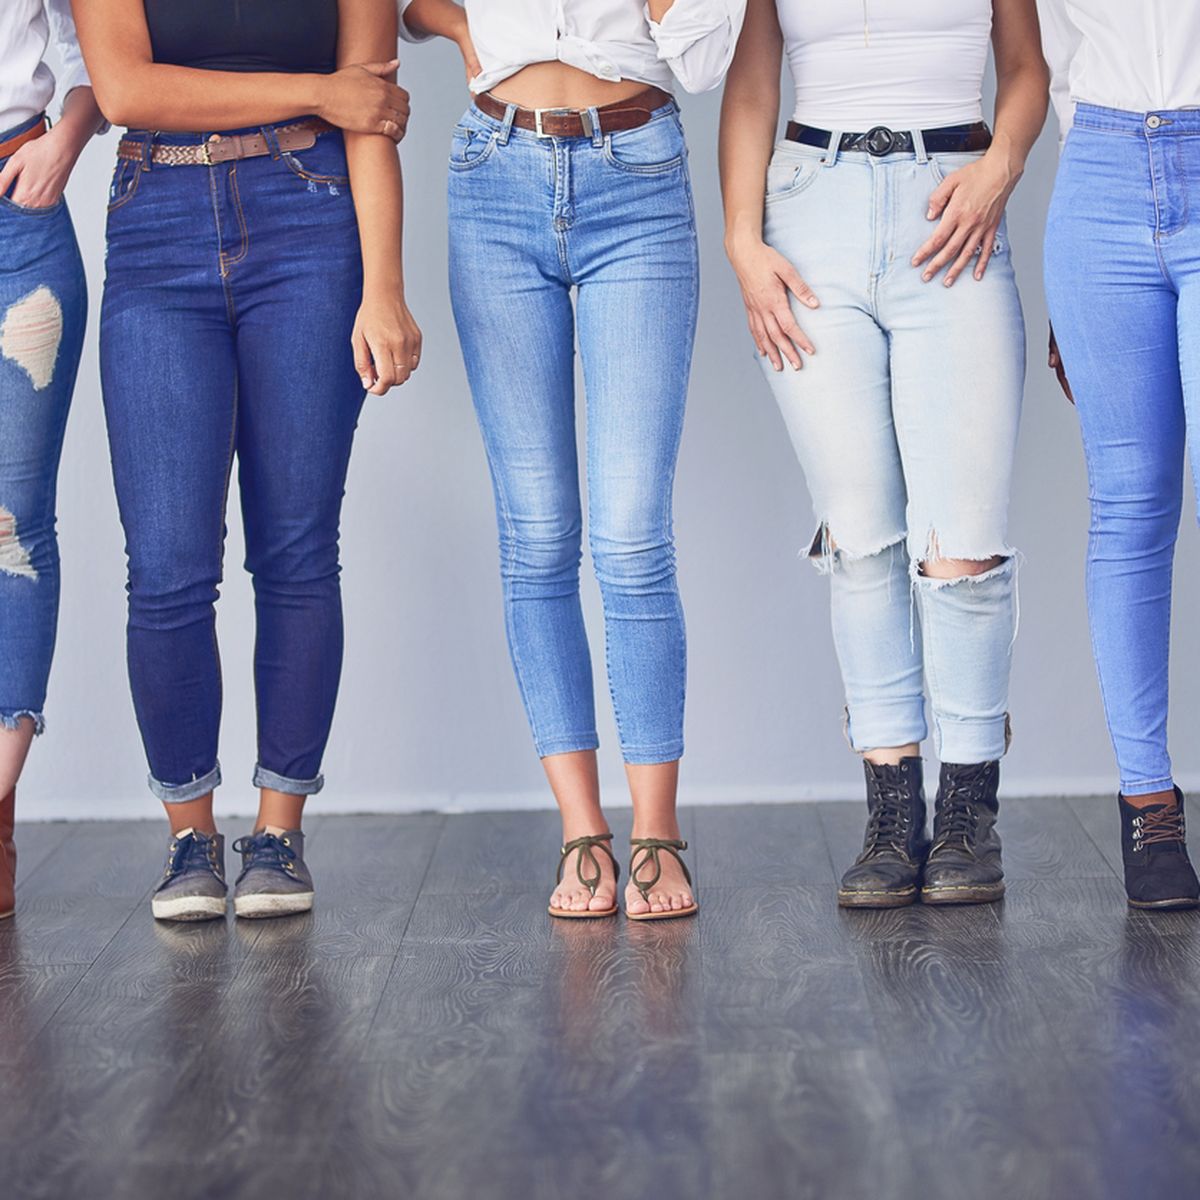 Jeans-Trends: Das sind die wichtigsten fünf Jeans-Neuheiten für 2020 | Jeans